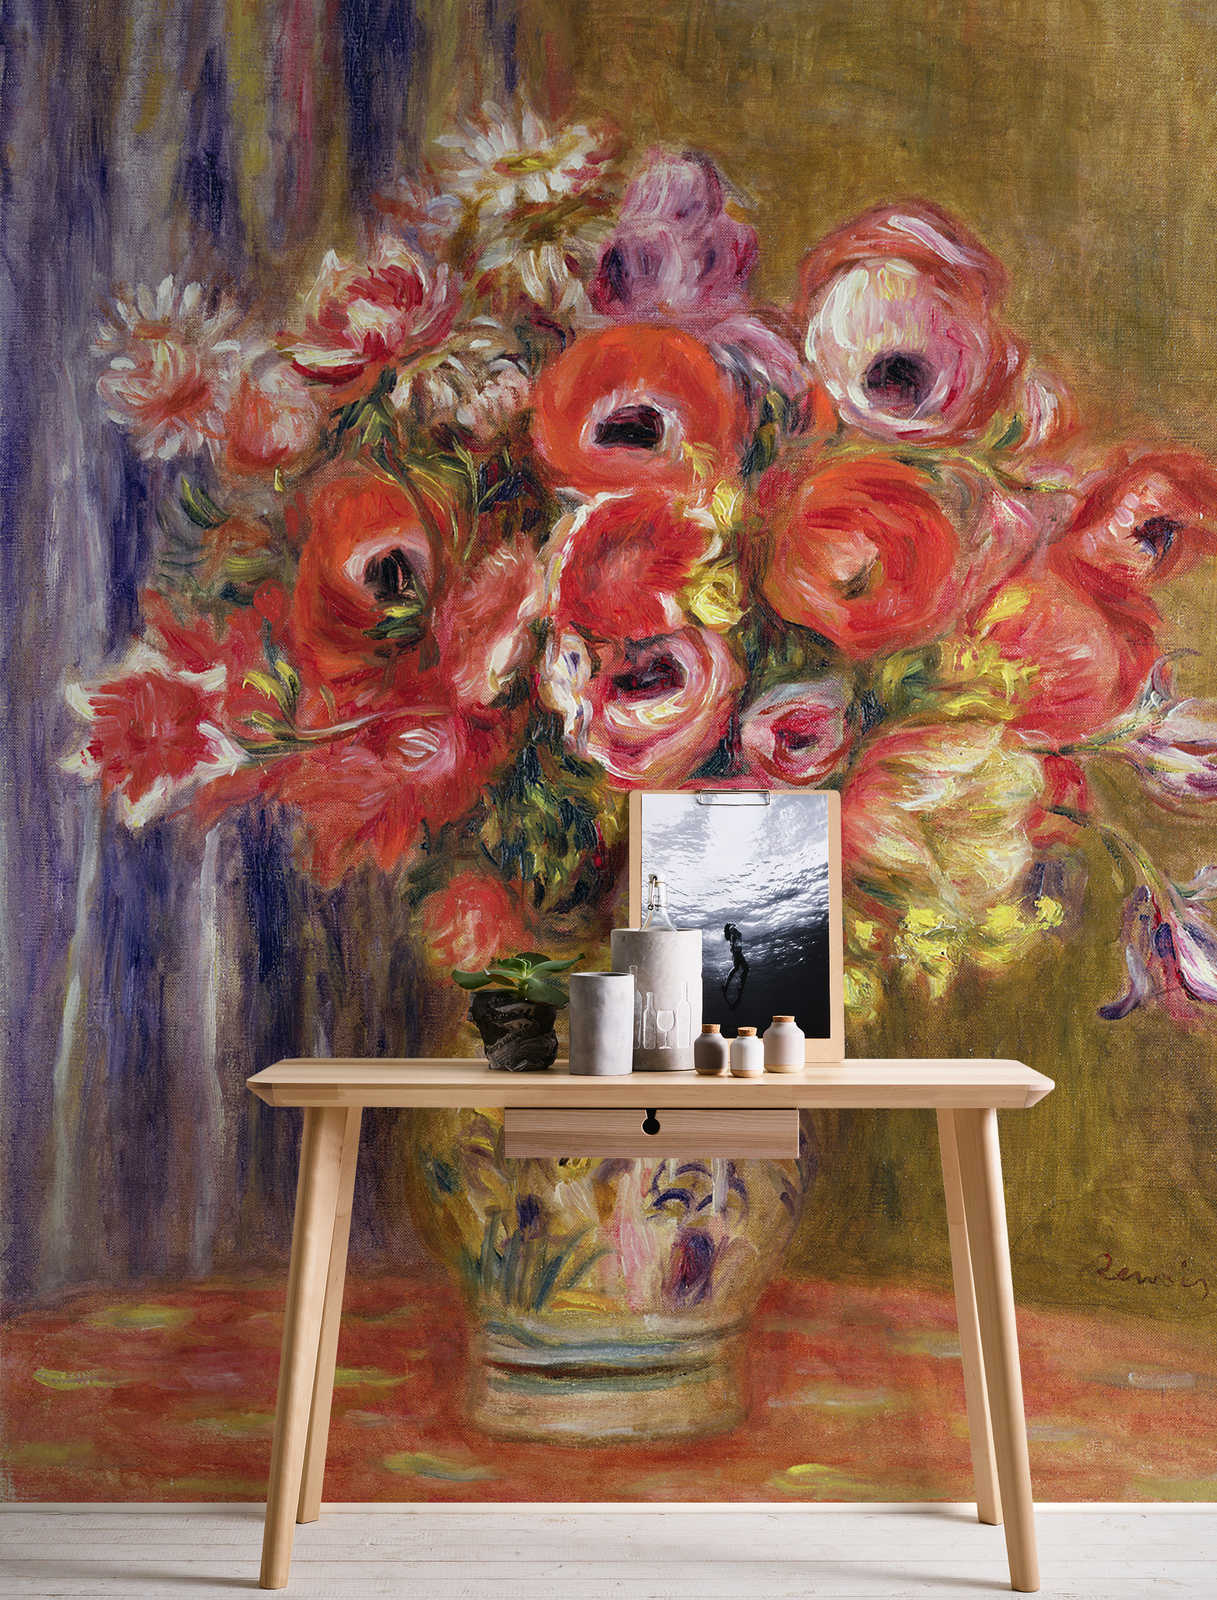             Papier peint "Vase avec tulipes et anémones" de Pierre Auguste Renoir
        